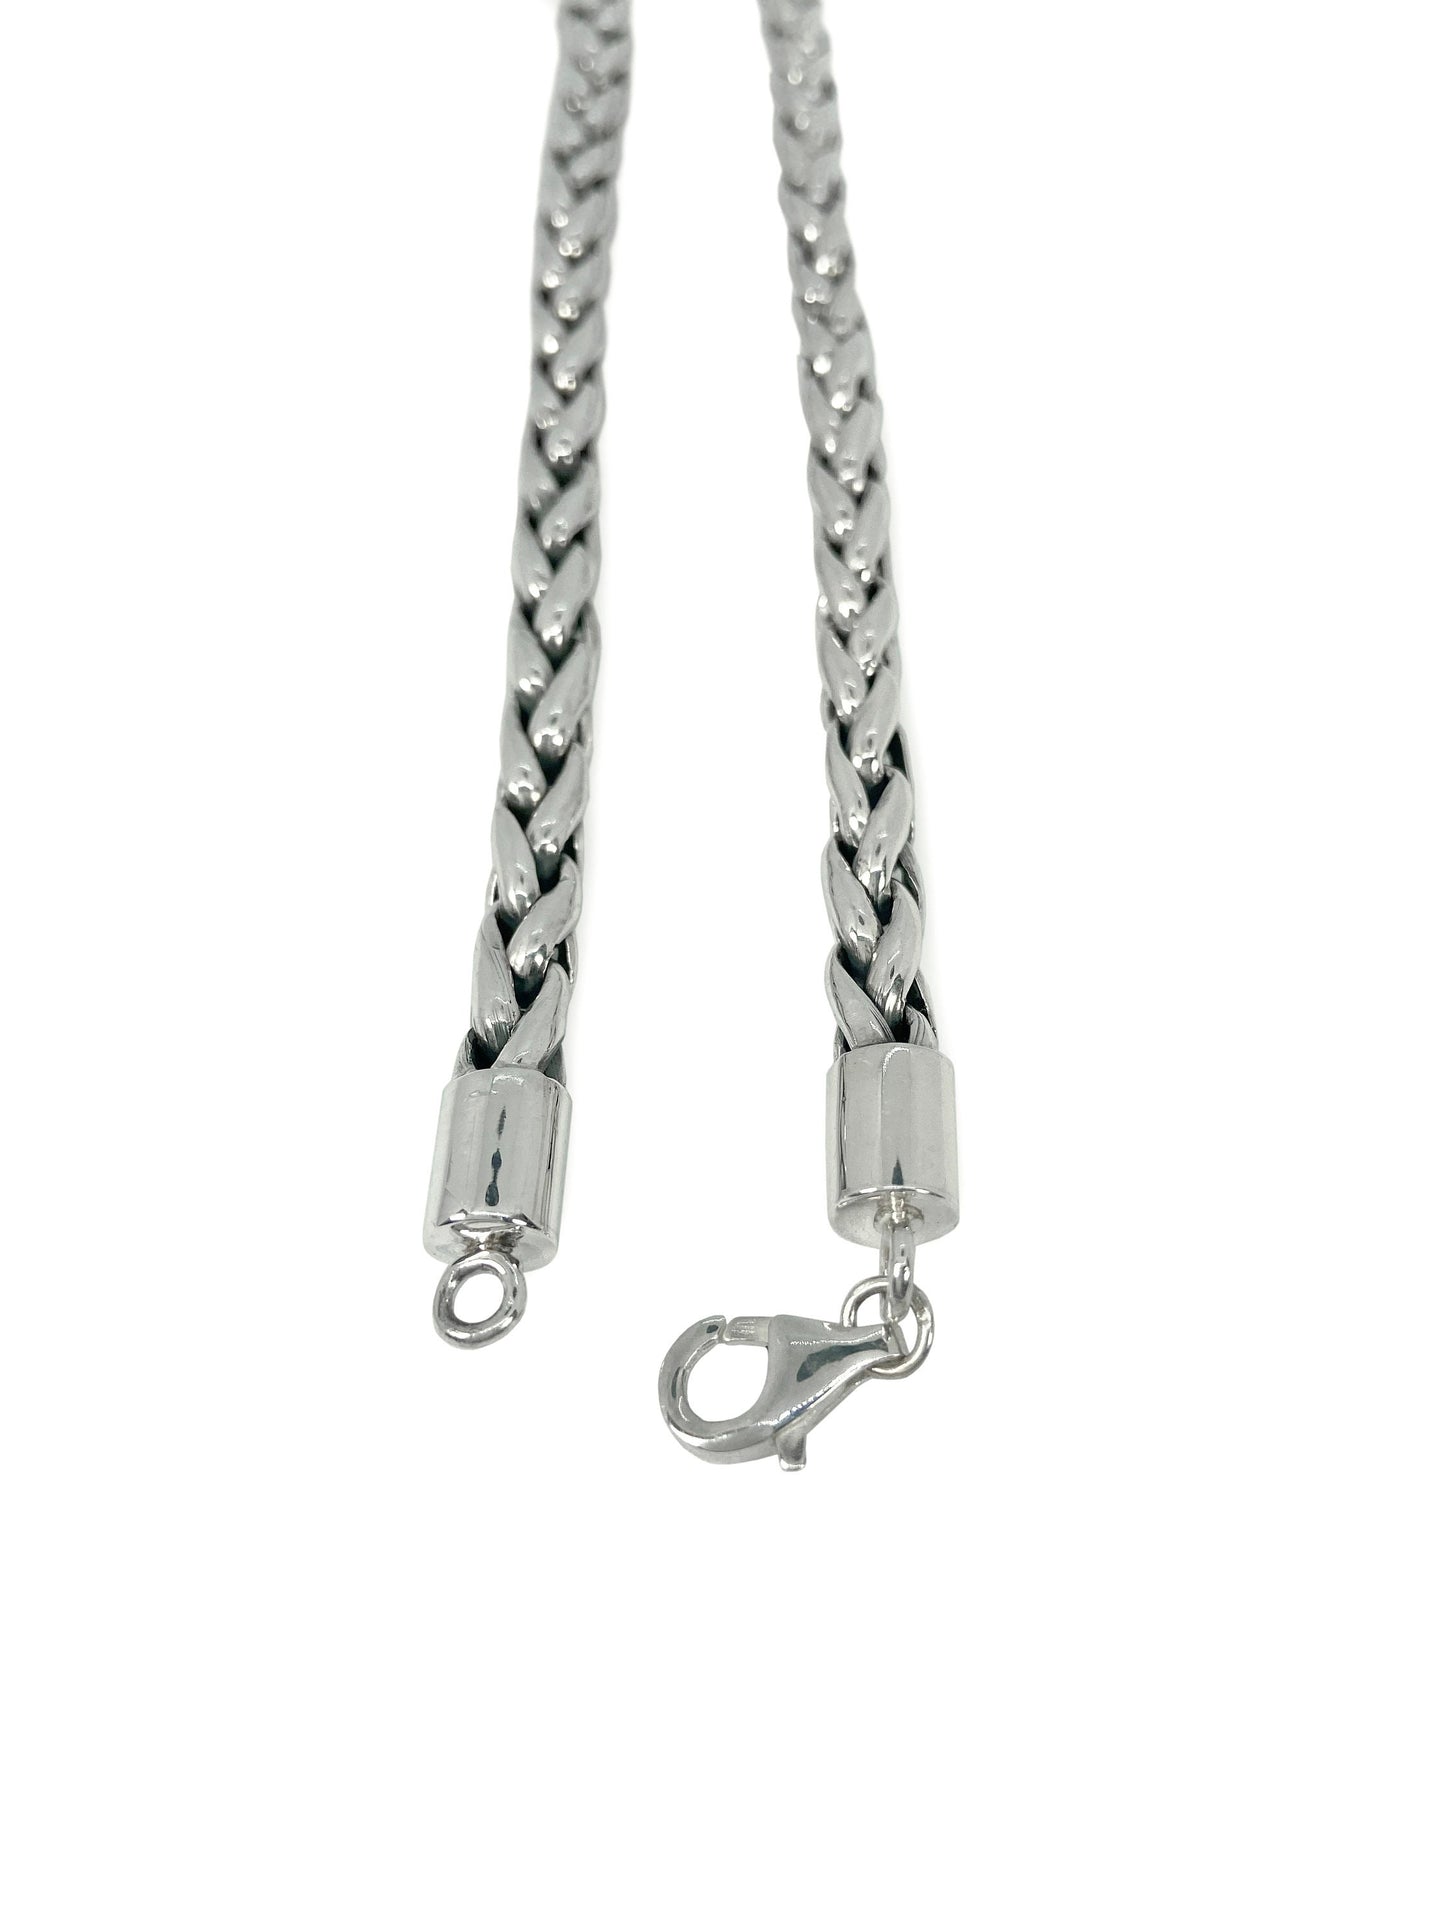 Rope Bracelet Link 6mm